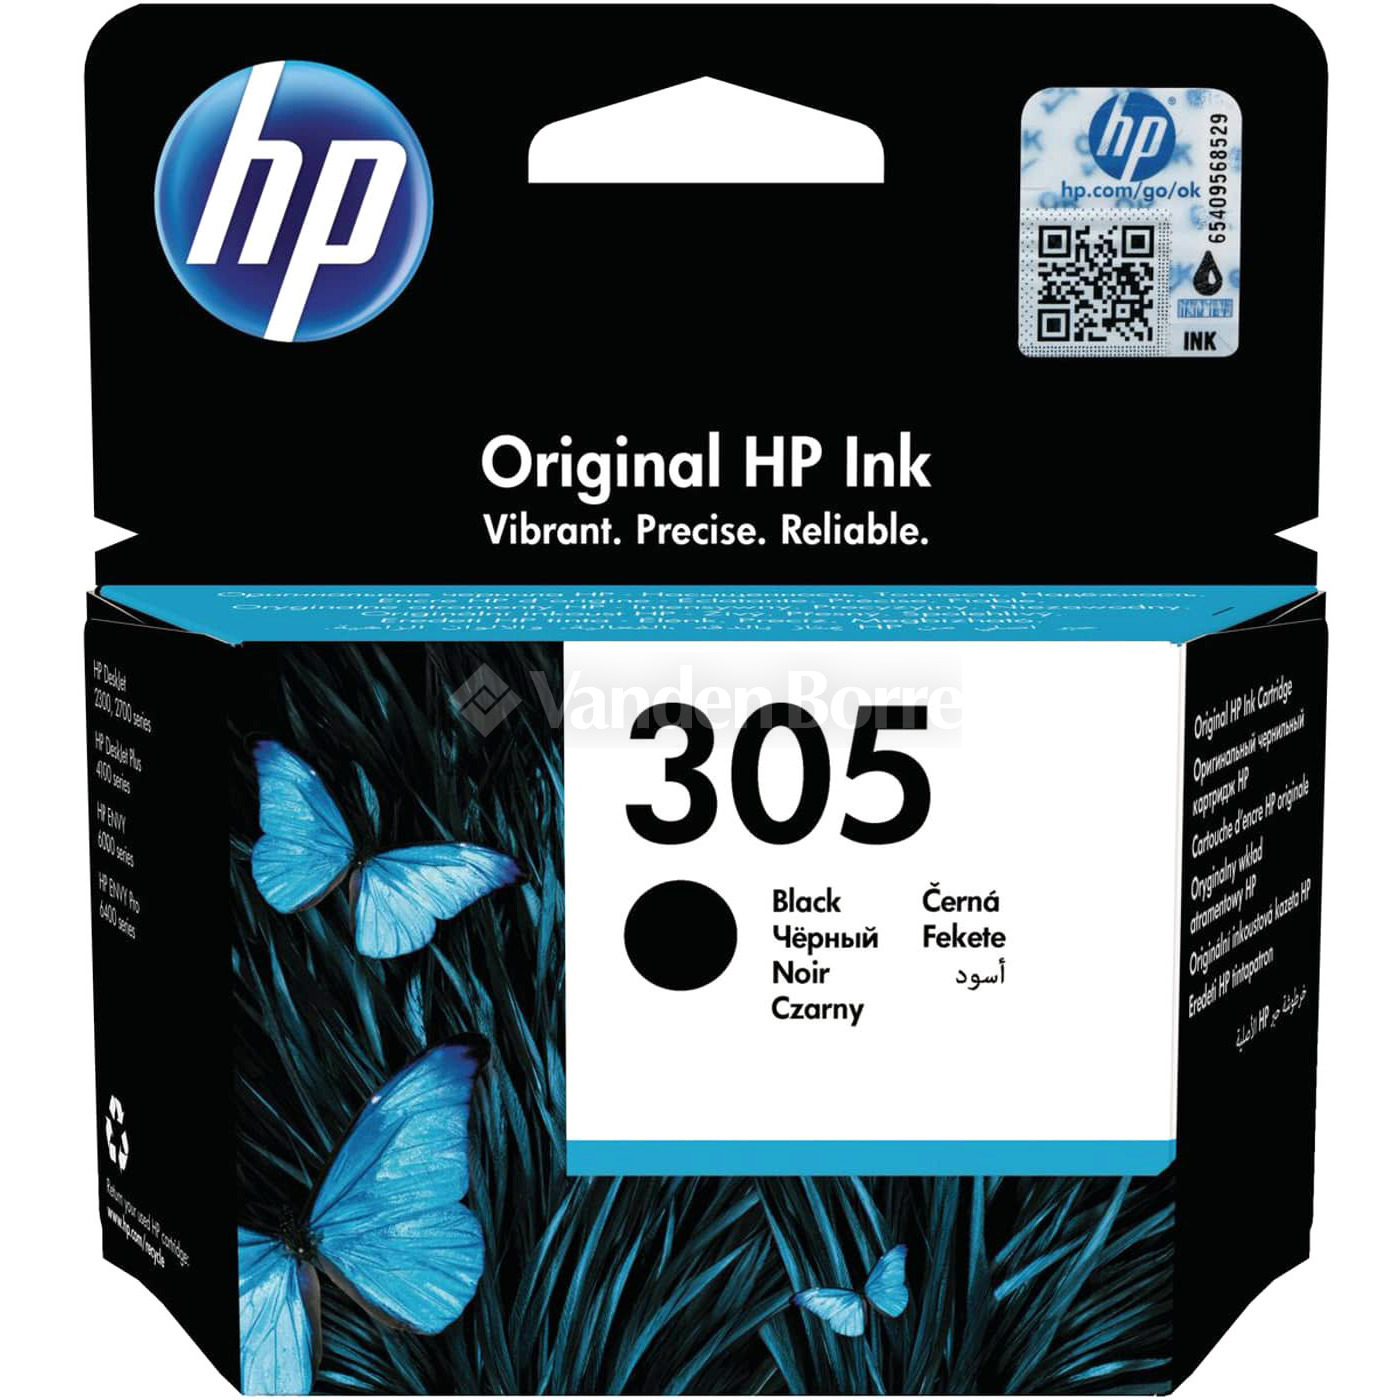 Vendez vos cartouches HP 305 Instant Ink Couleurs vides au meilleur prix !